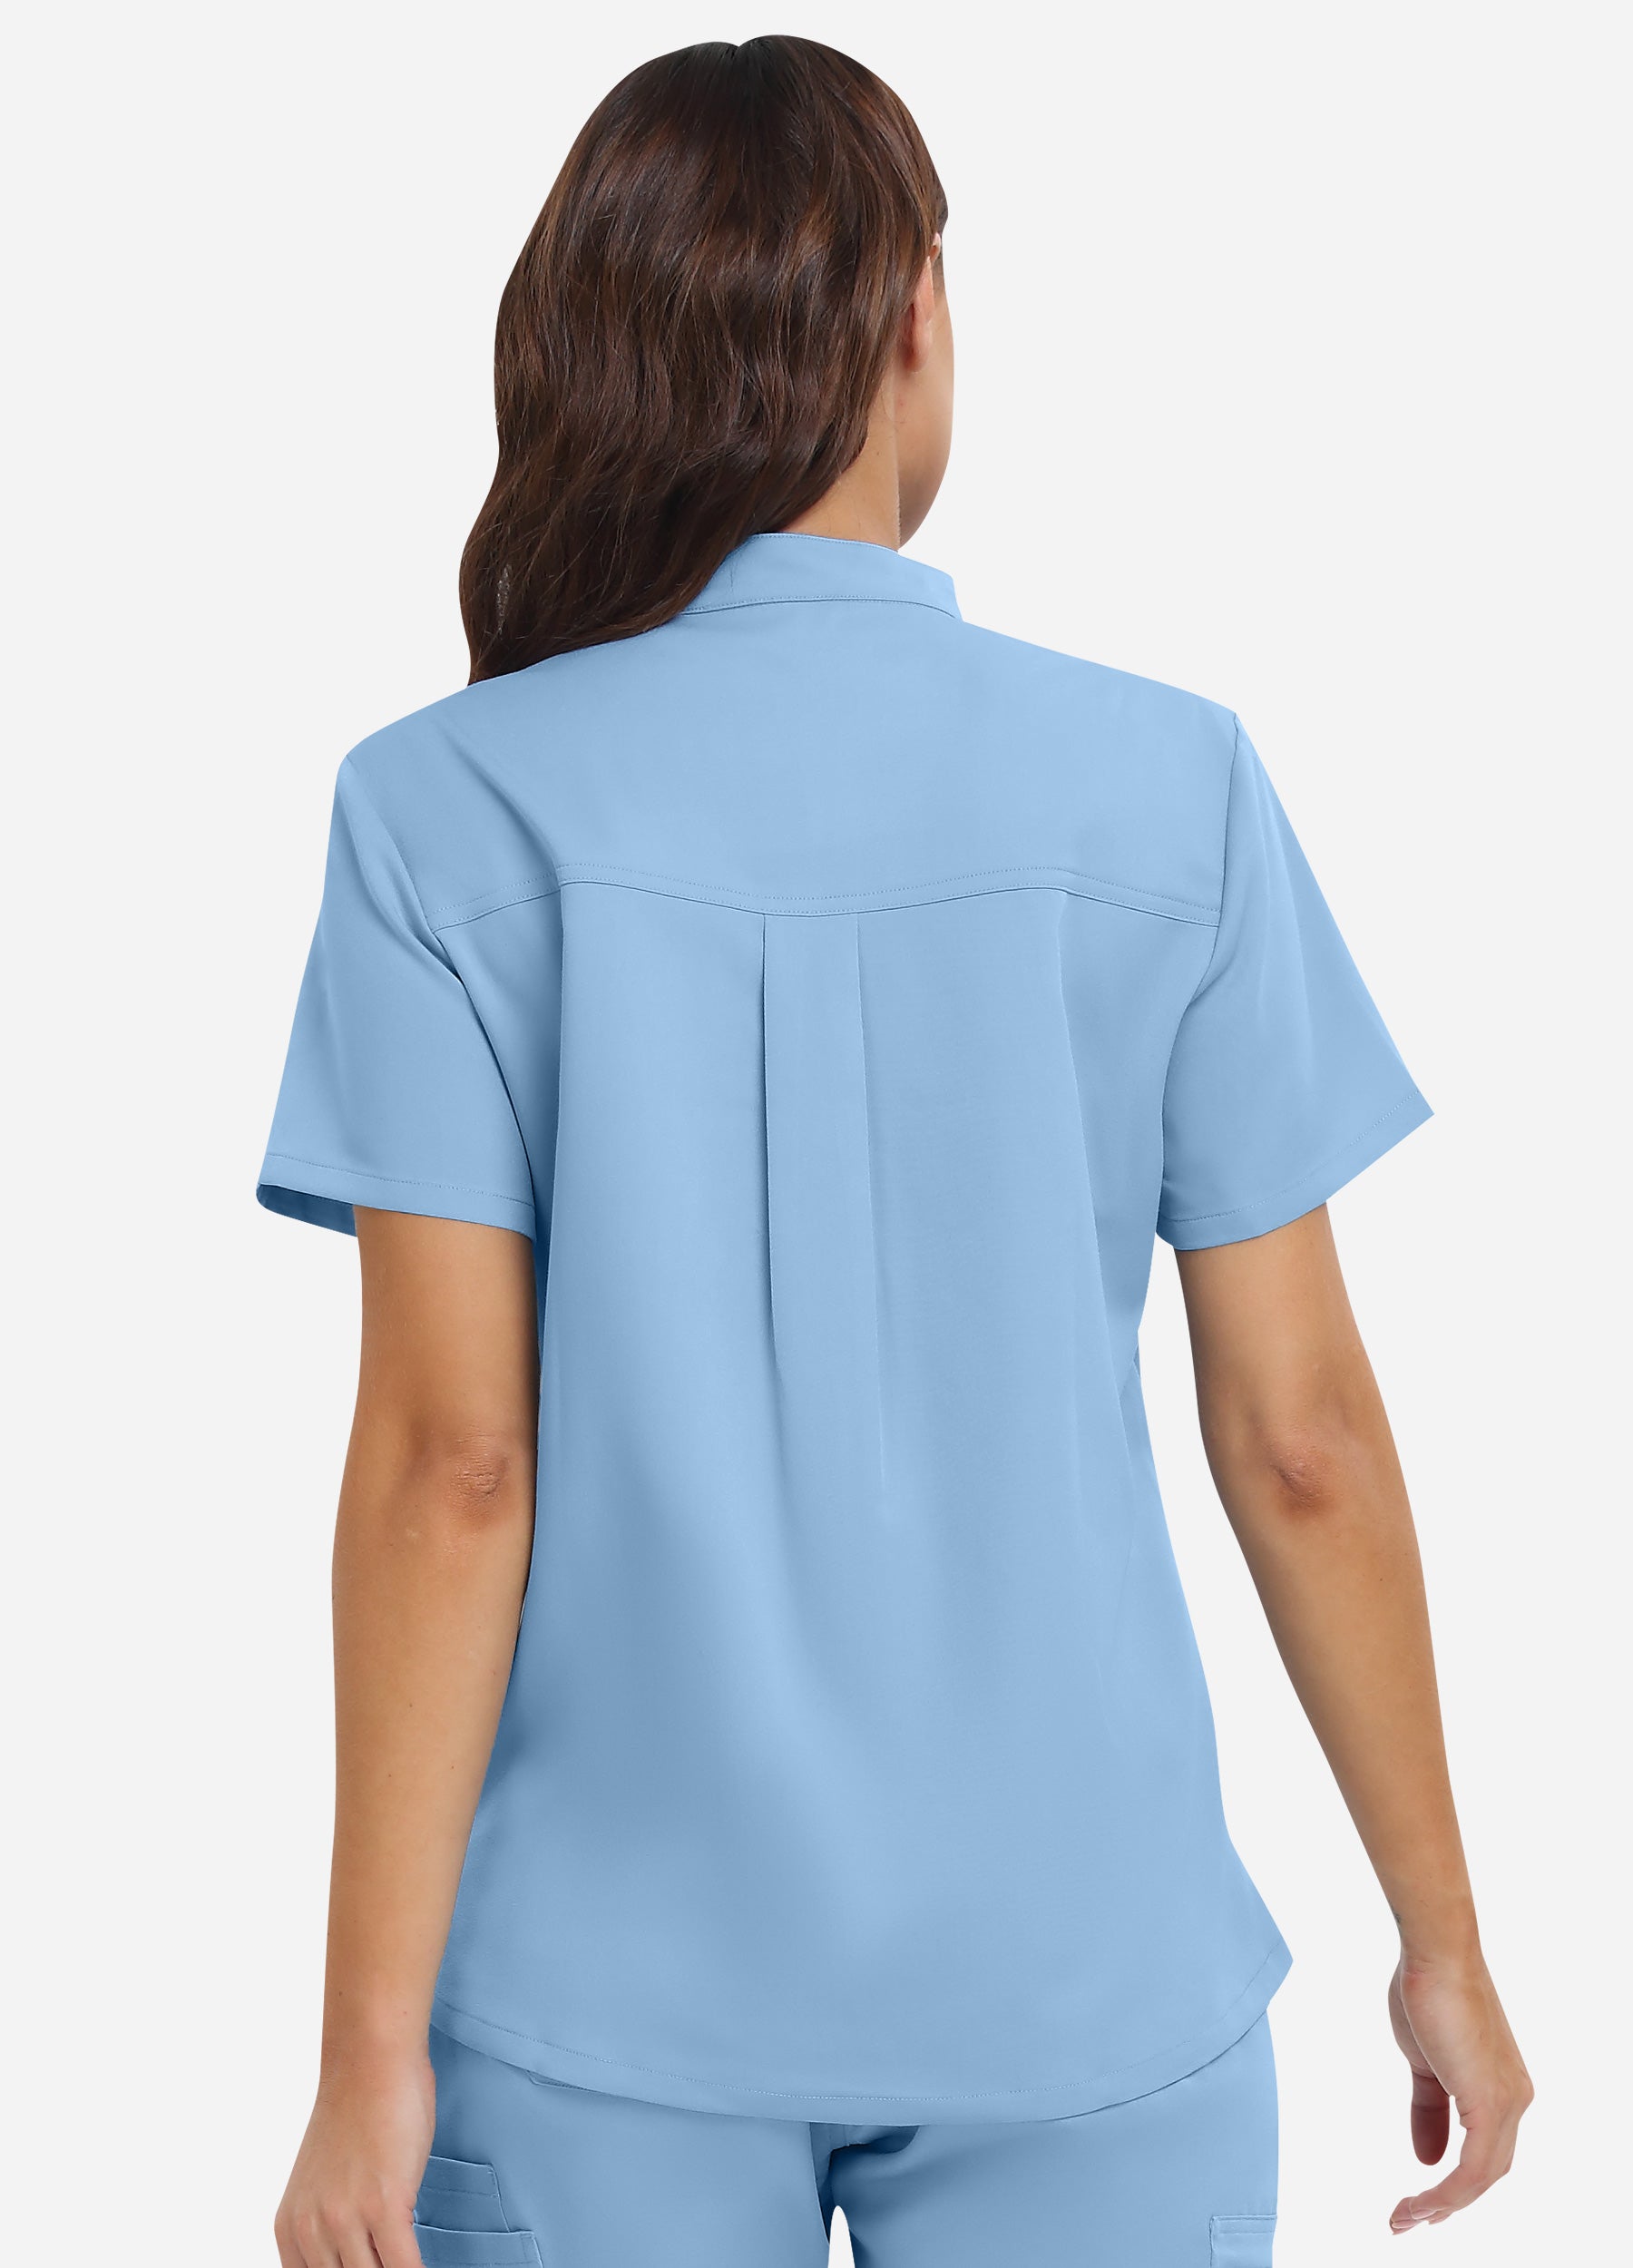 Blusa médica de 3 bolsillos con cuello mandarín para mujer